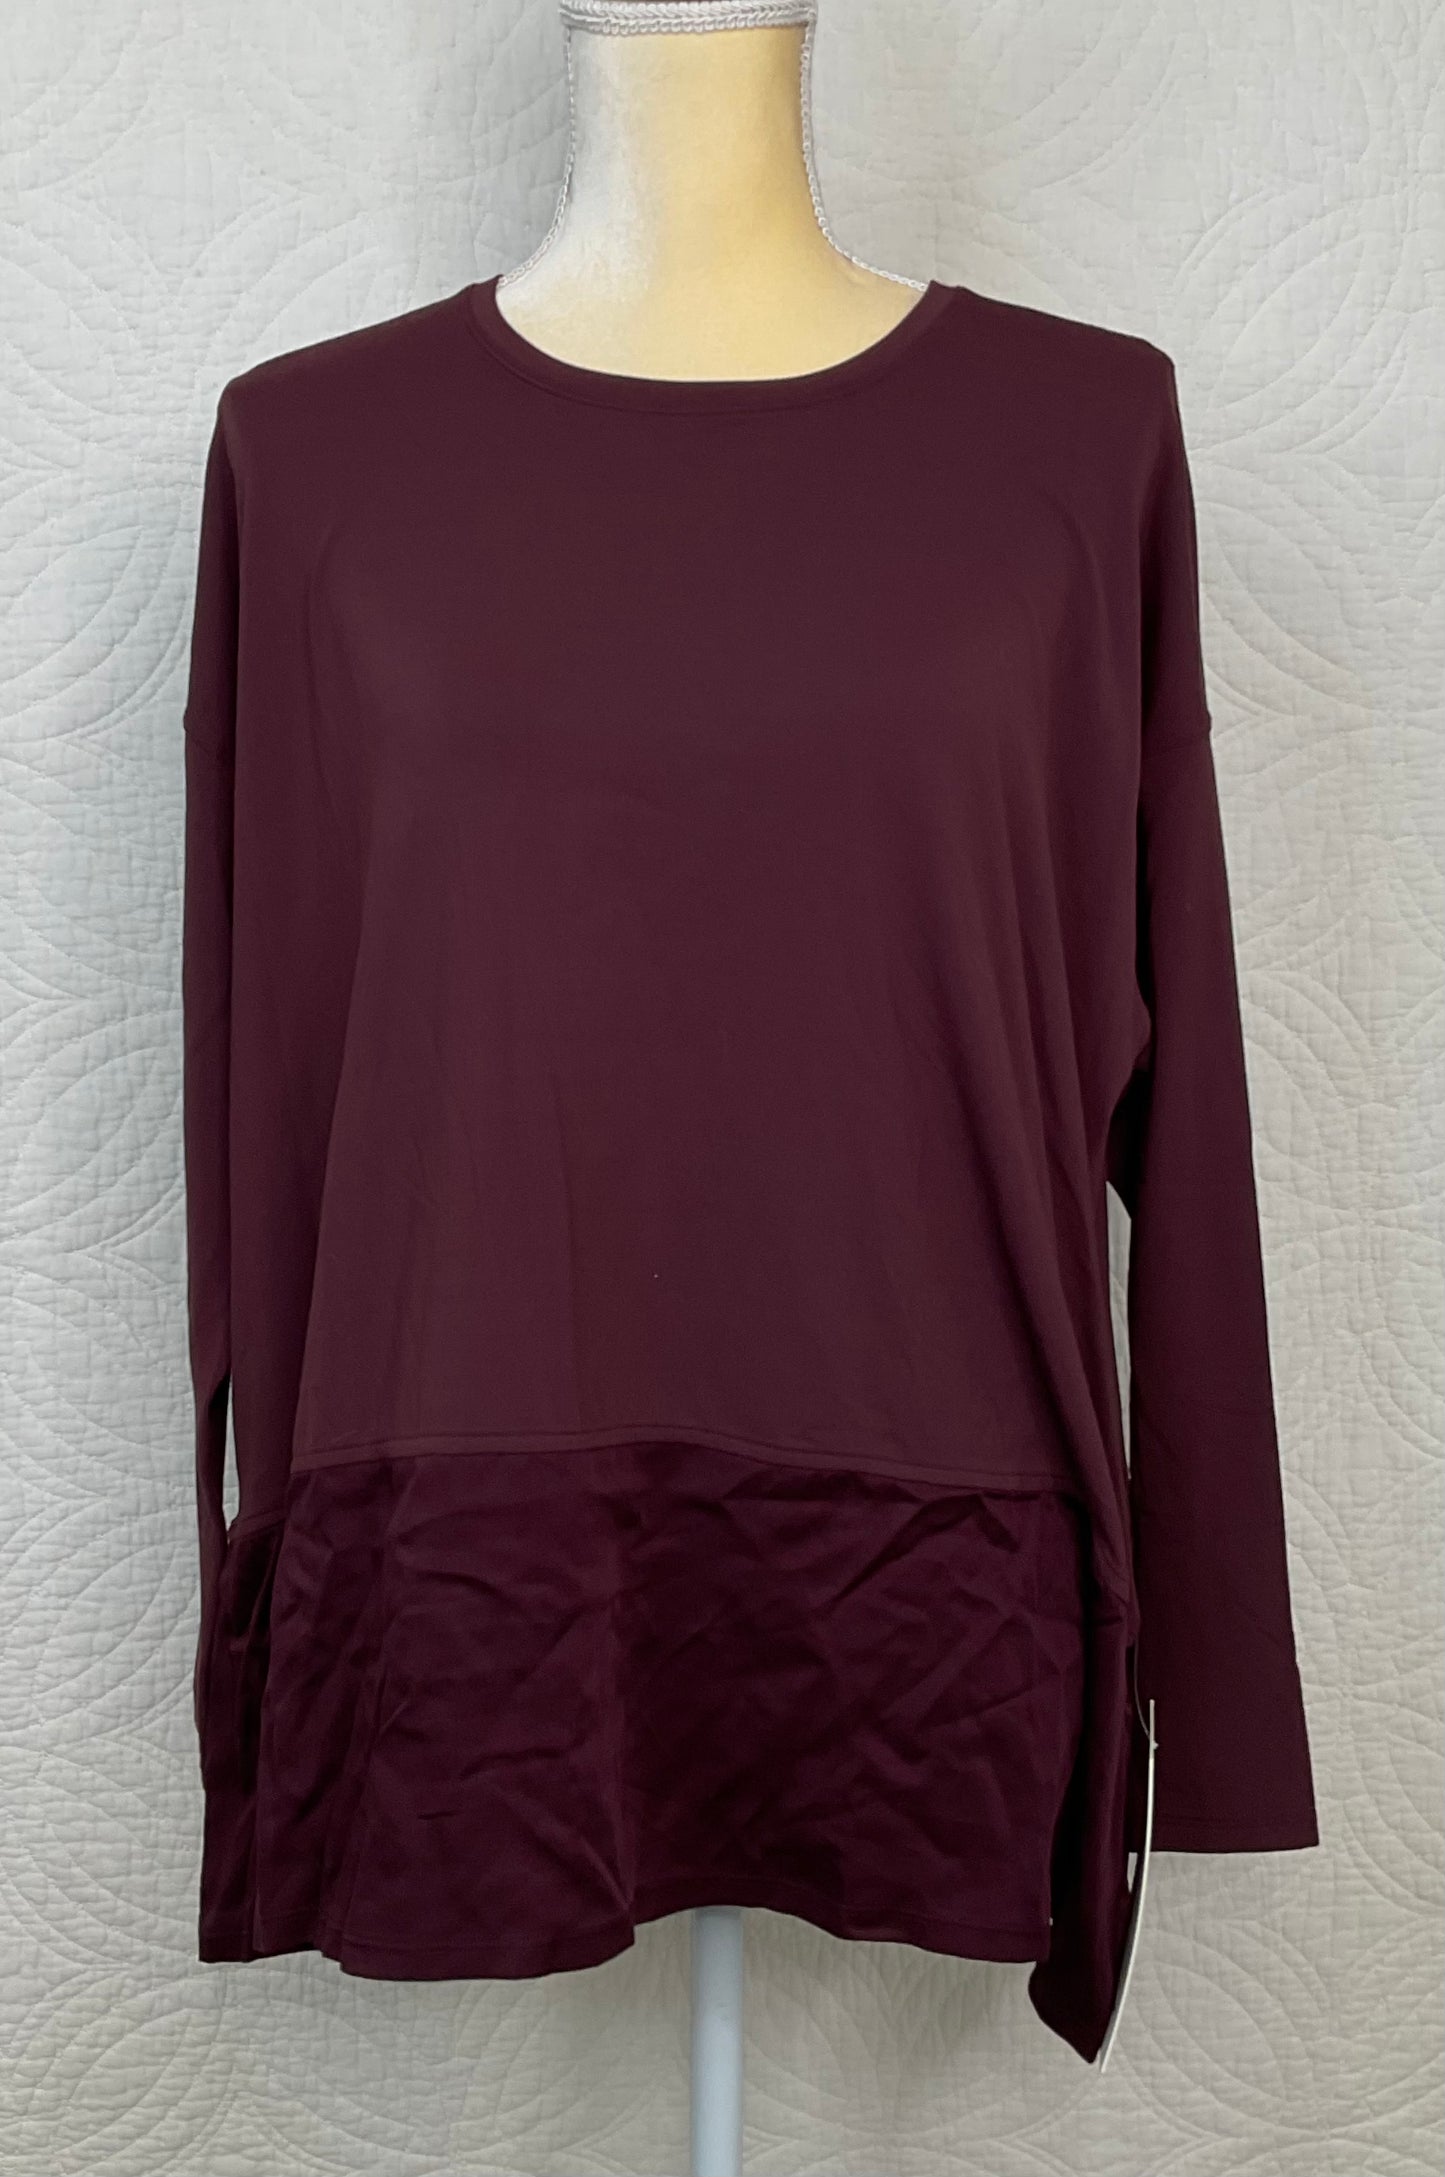 Lululemon Ease of Mind Long Sleeve Shirt Burgundy, Size 6